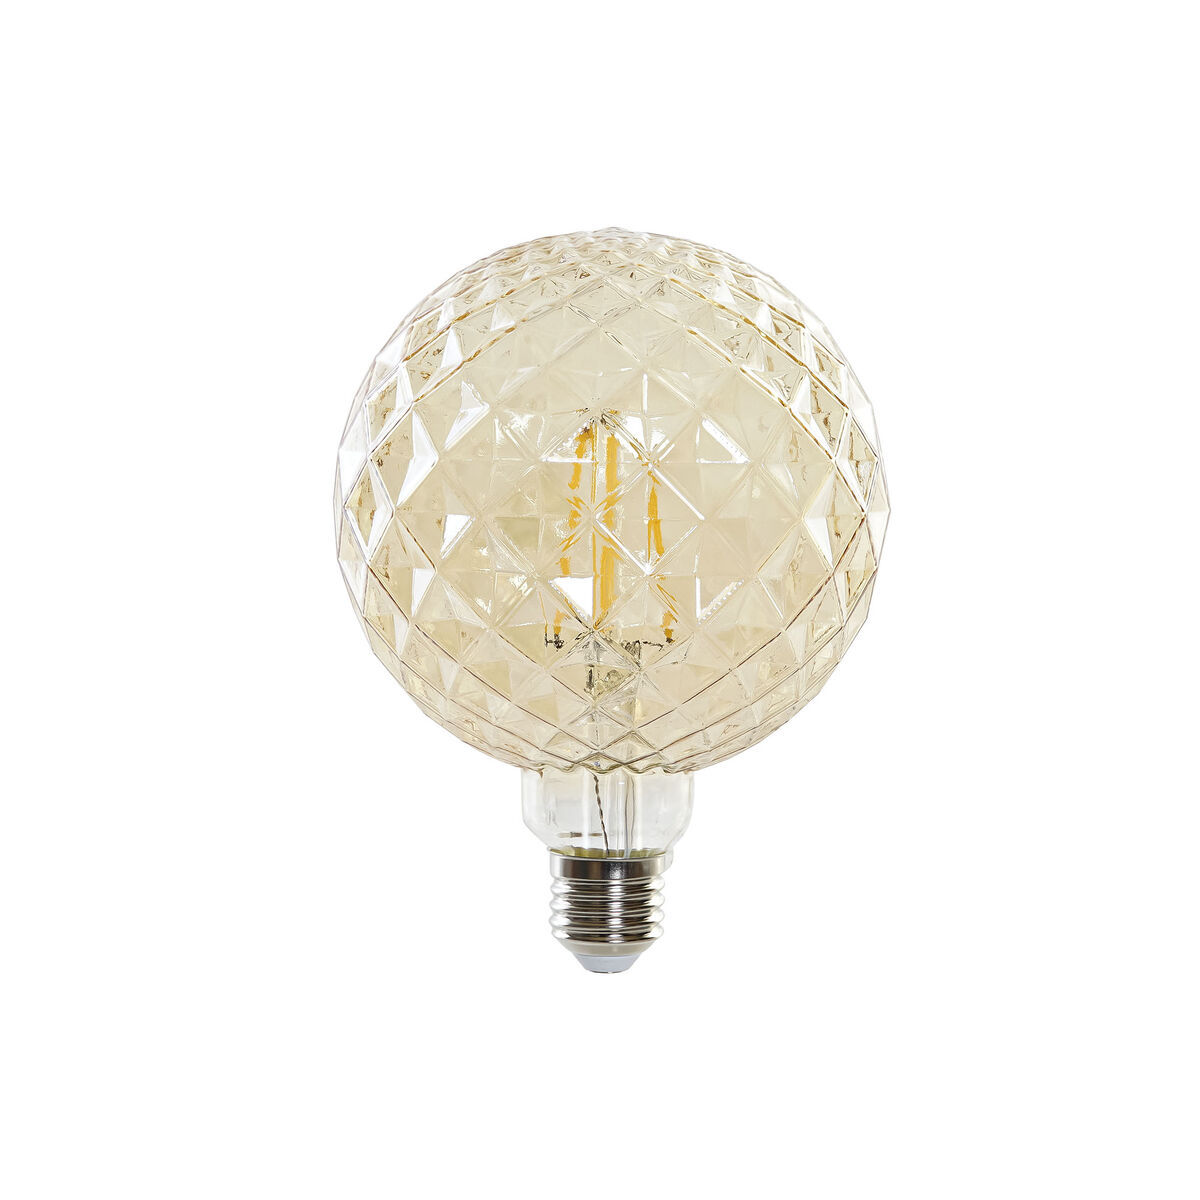 LED Лампа със Сензор за Движение InnovaGoods